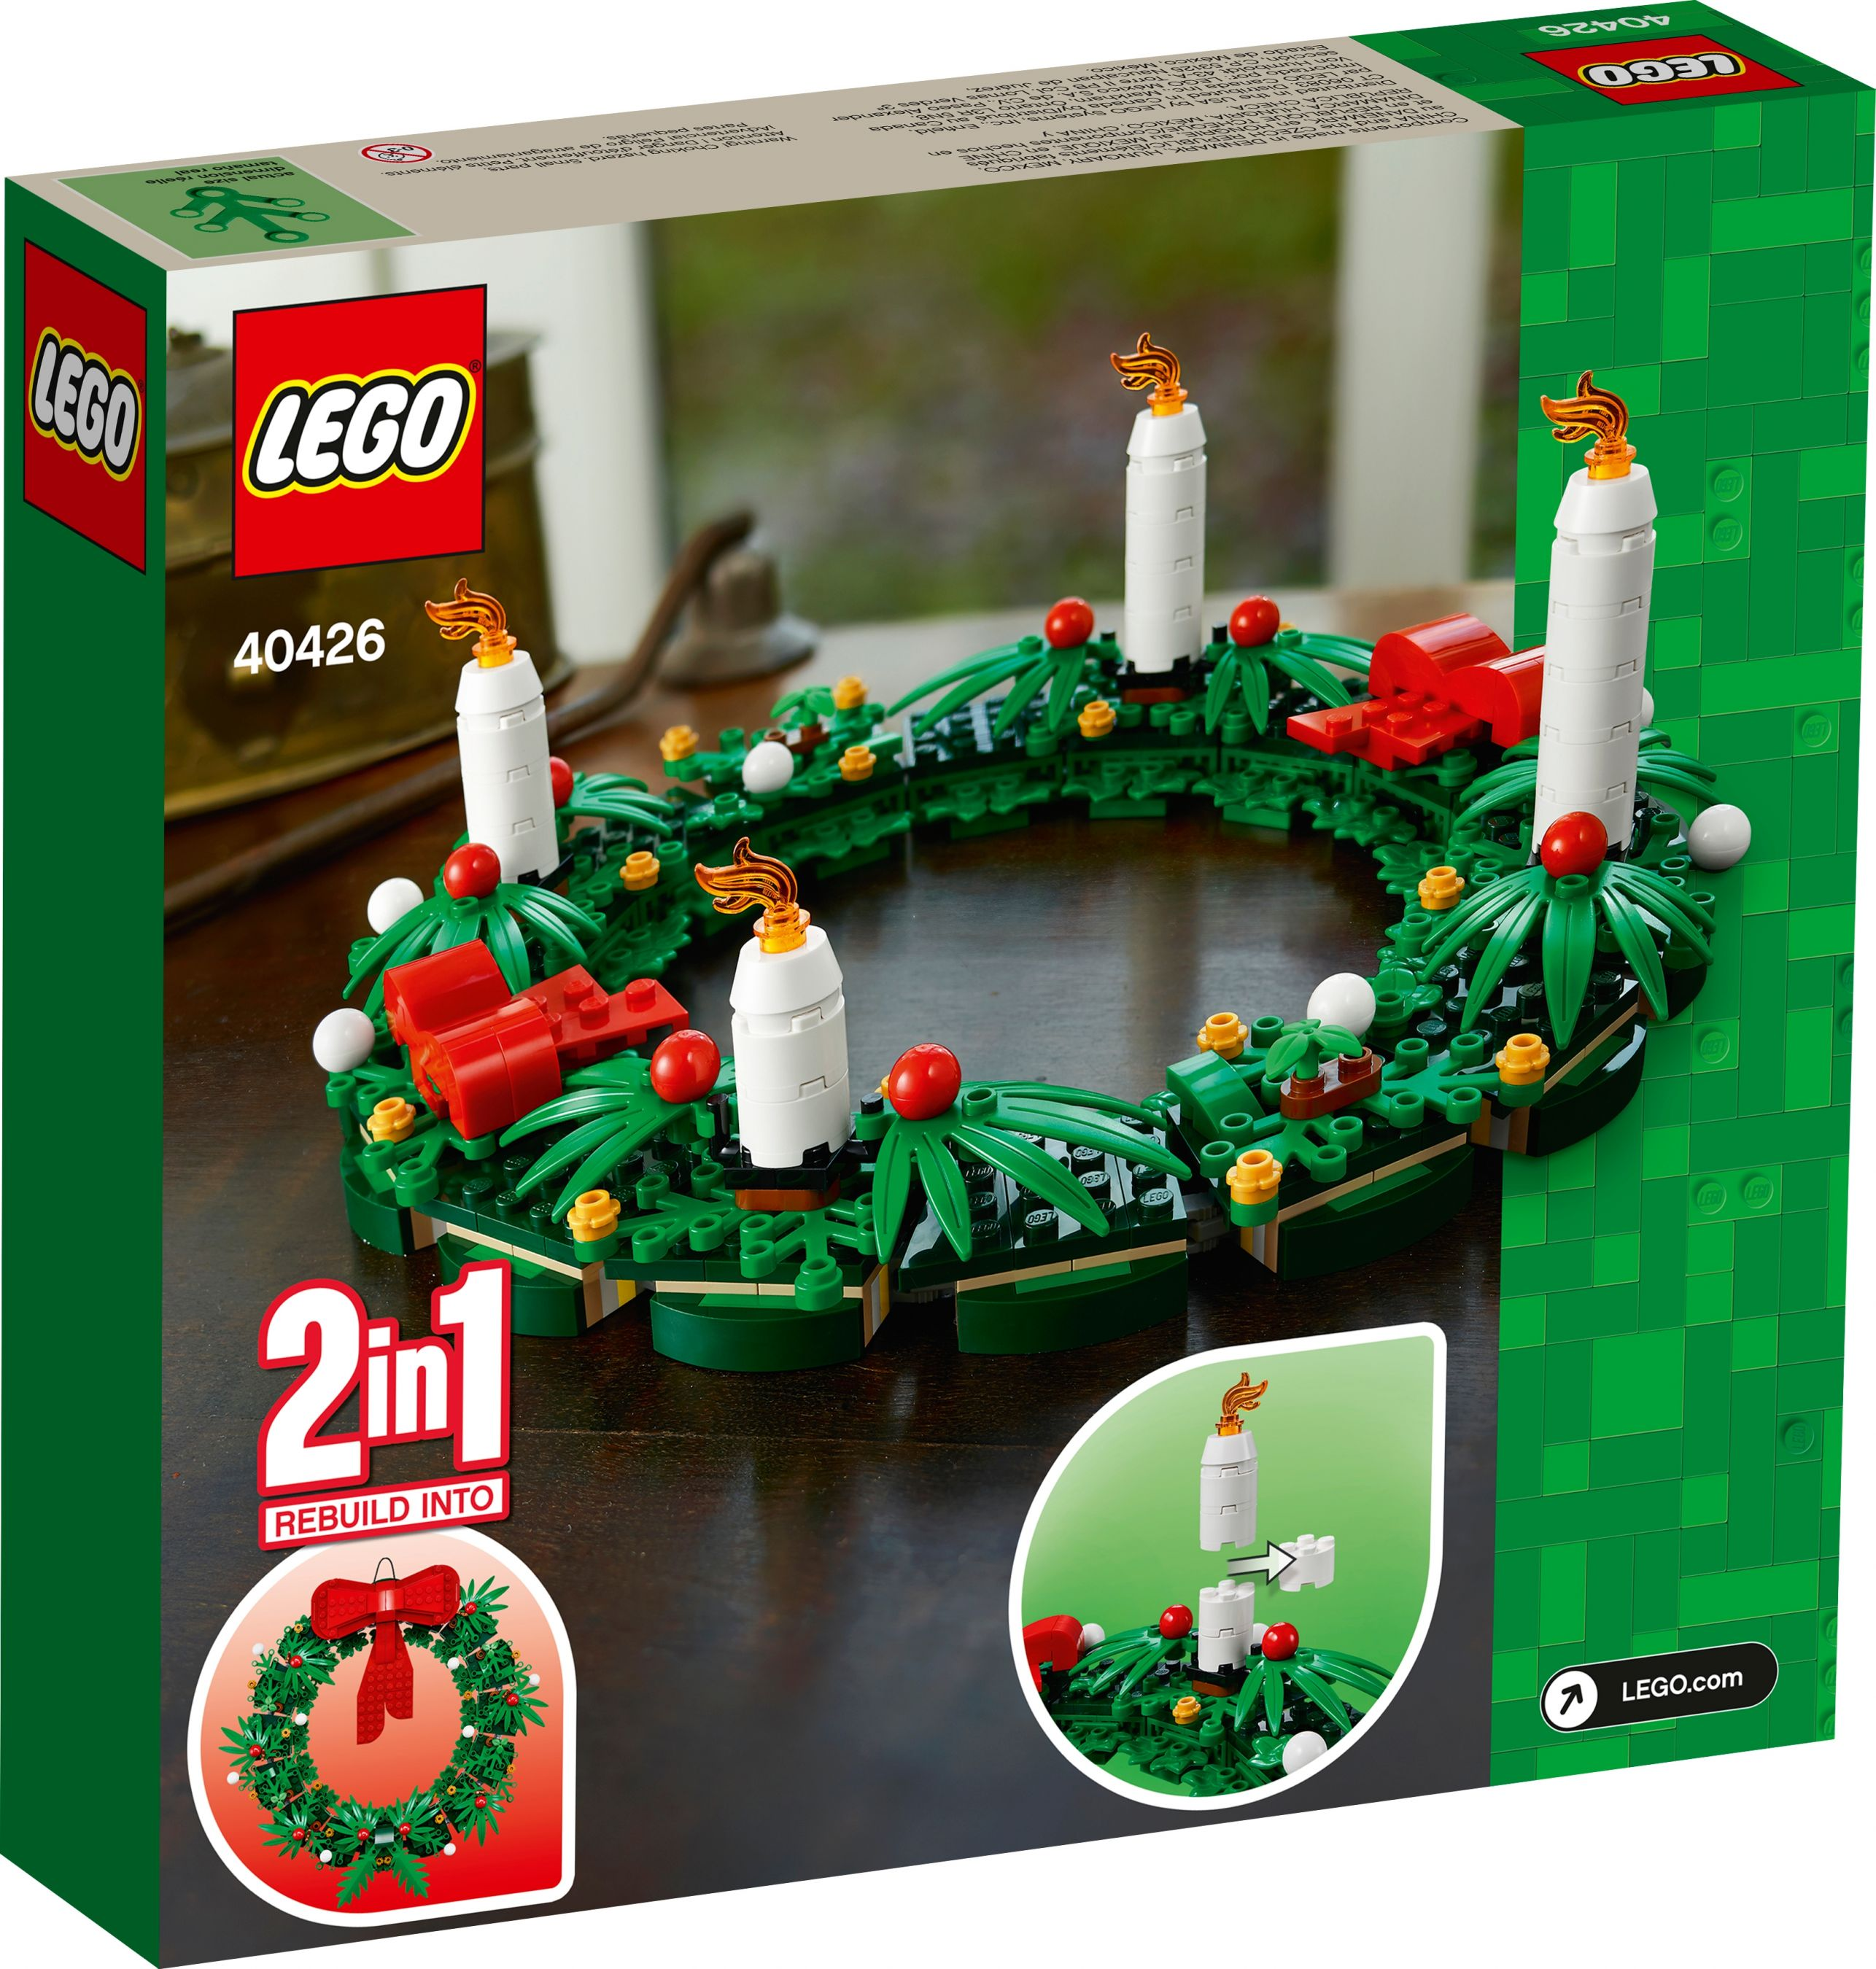 Adventskranz 2in1 Bausatz / Türkranz LEGO 40426